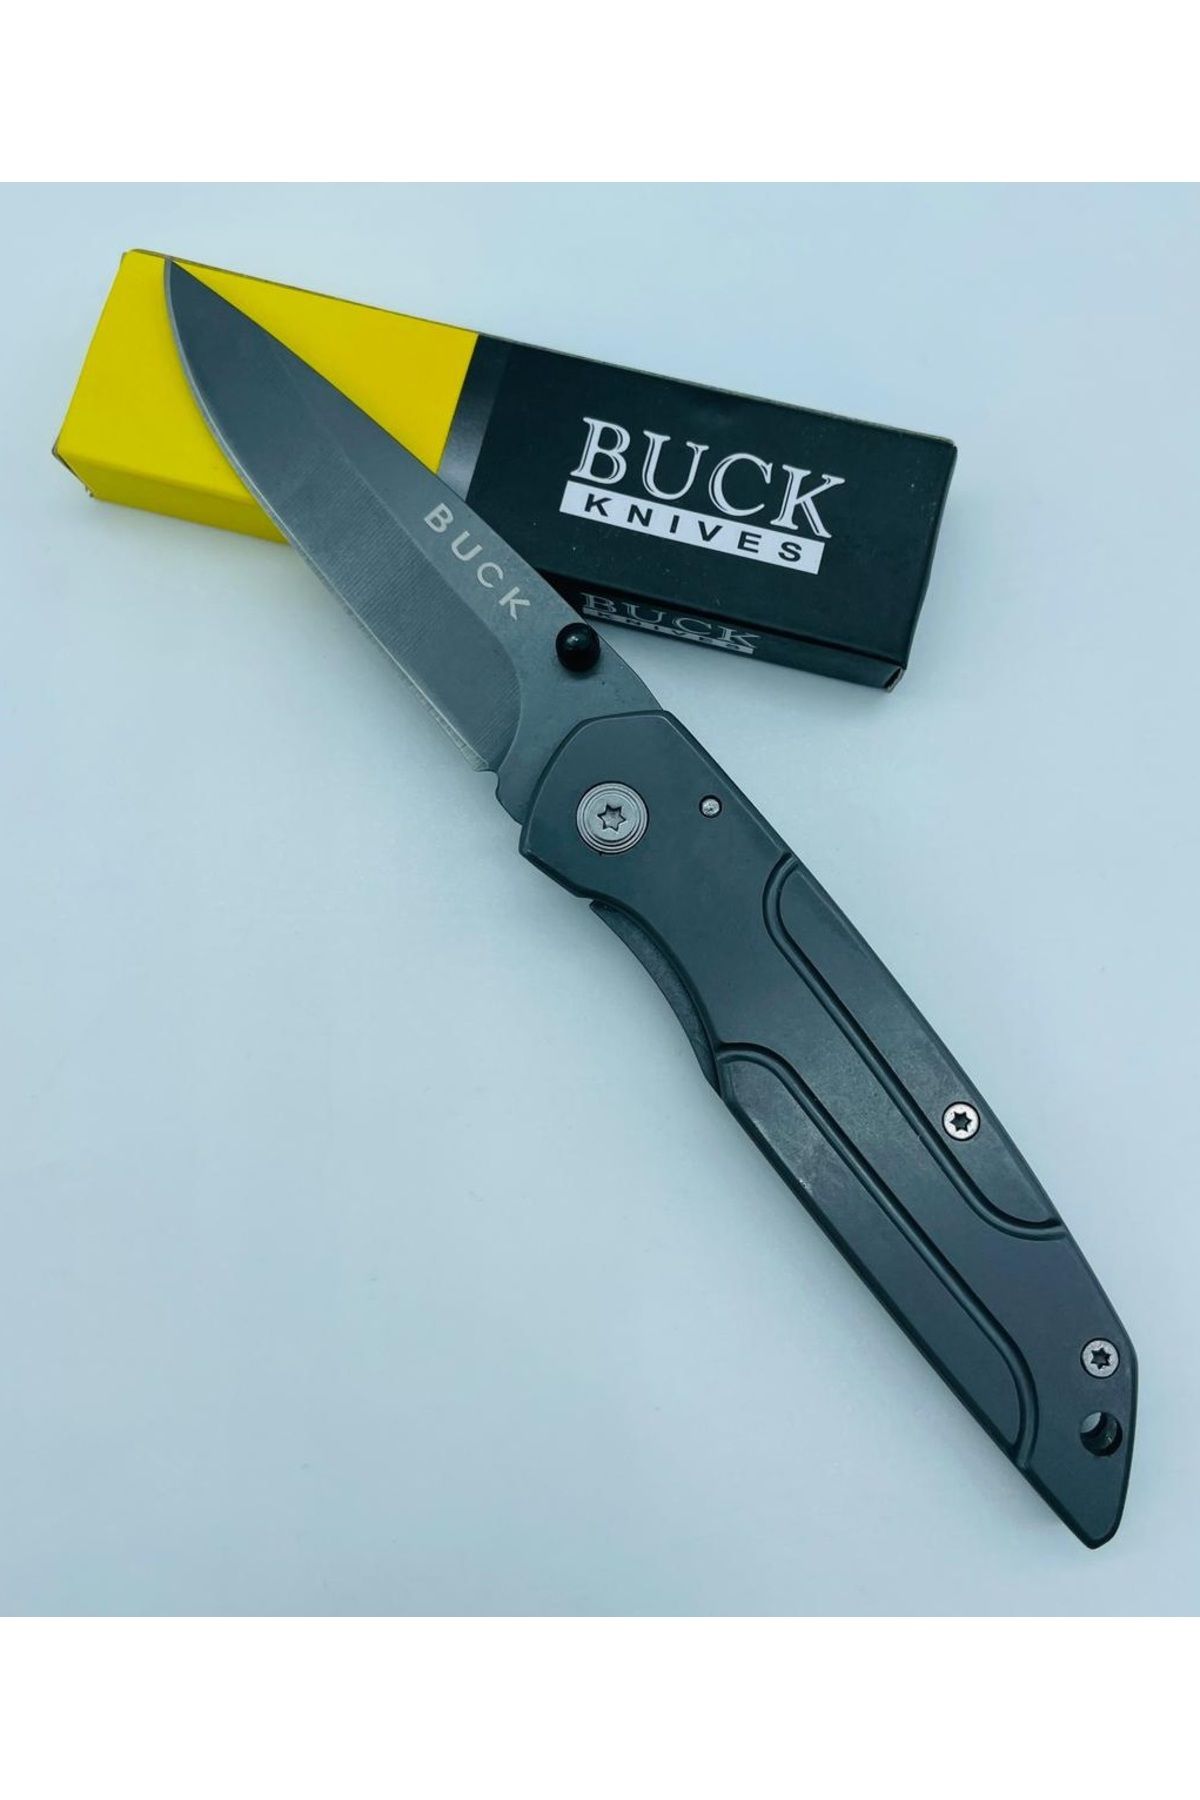 Buck Marka Metal Kasa Küçükboy Mini Çakı //18cm-N76